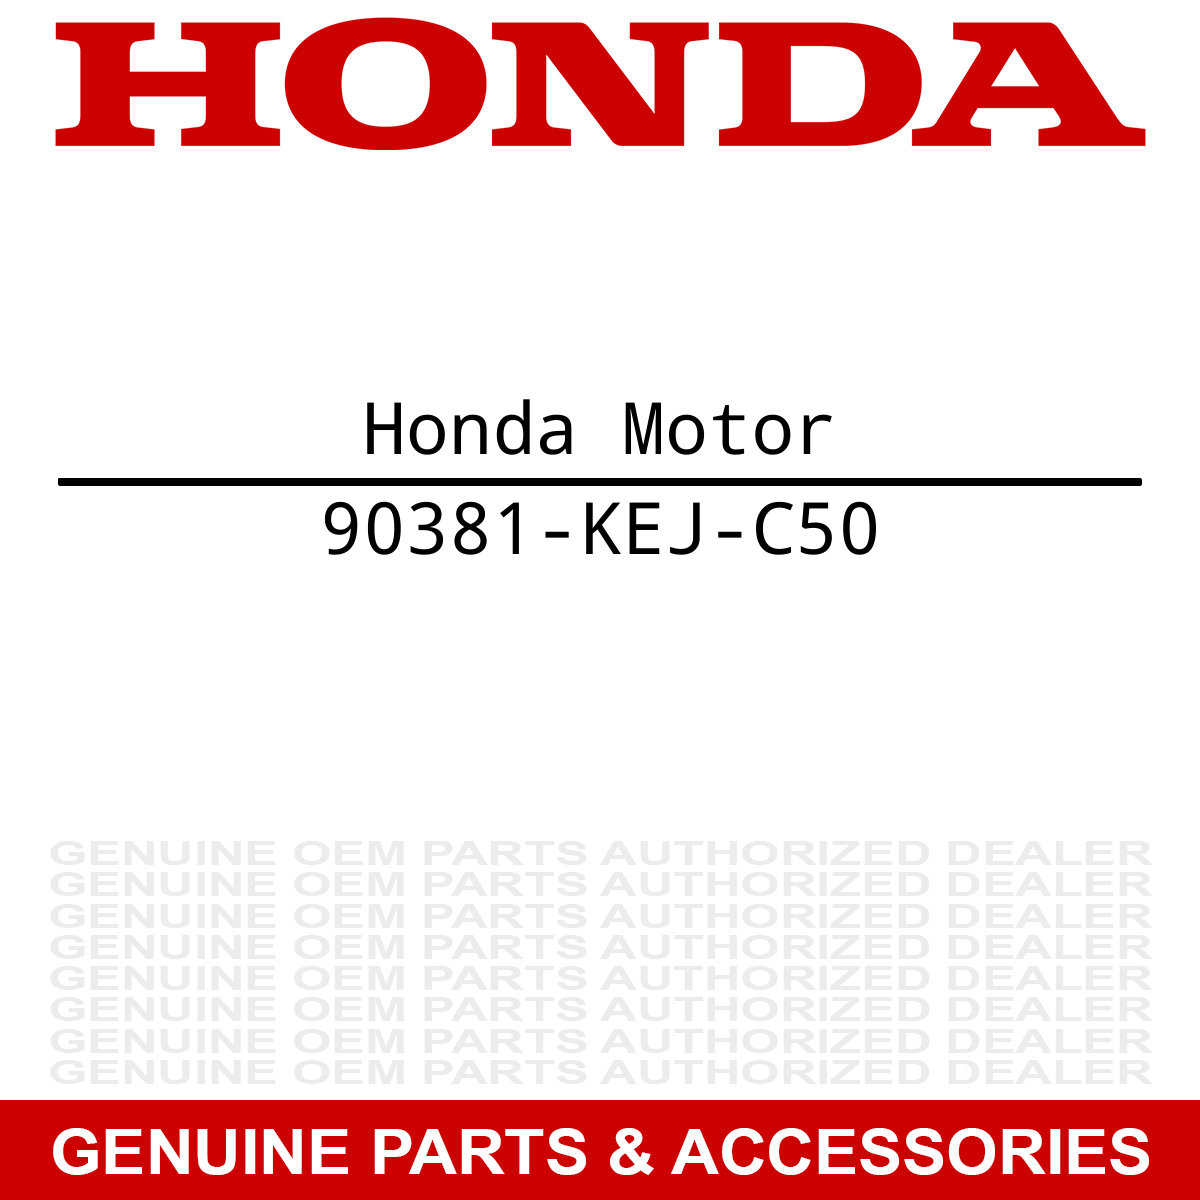 Honda 90381-KEJ-C50 Screw TRX450R TRX450ER TRX450ER TRX450R
Honda